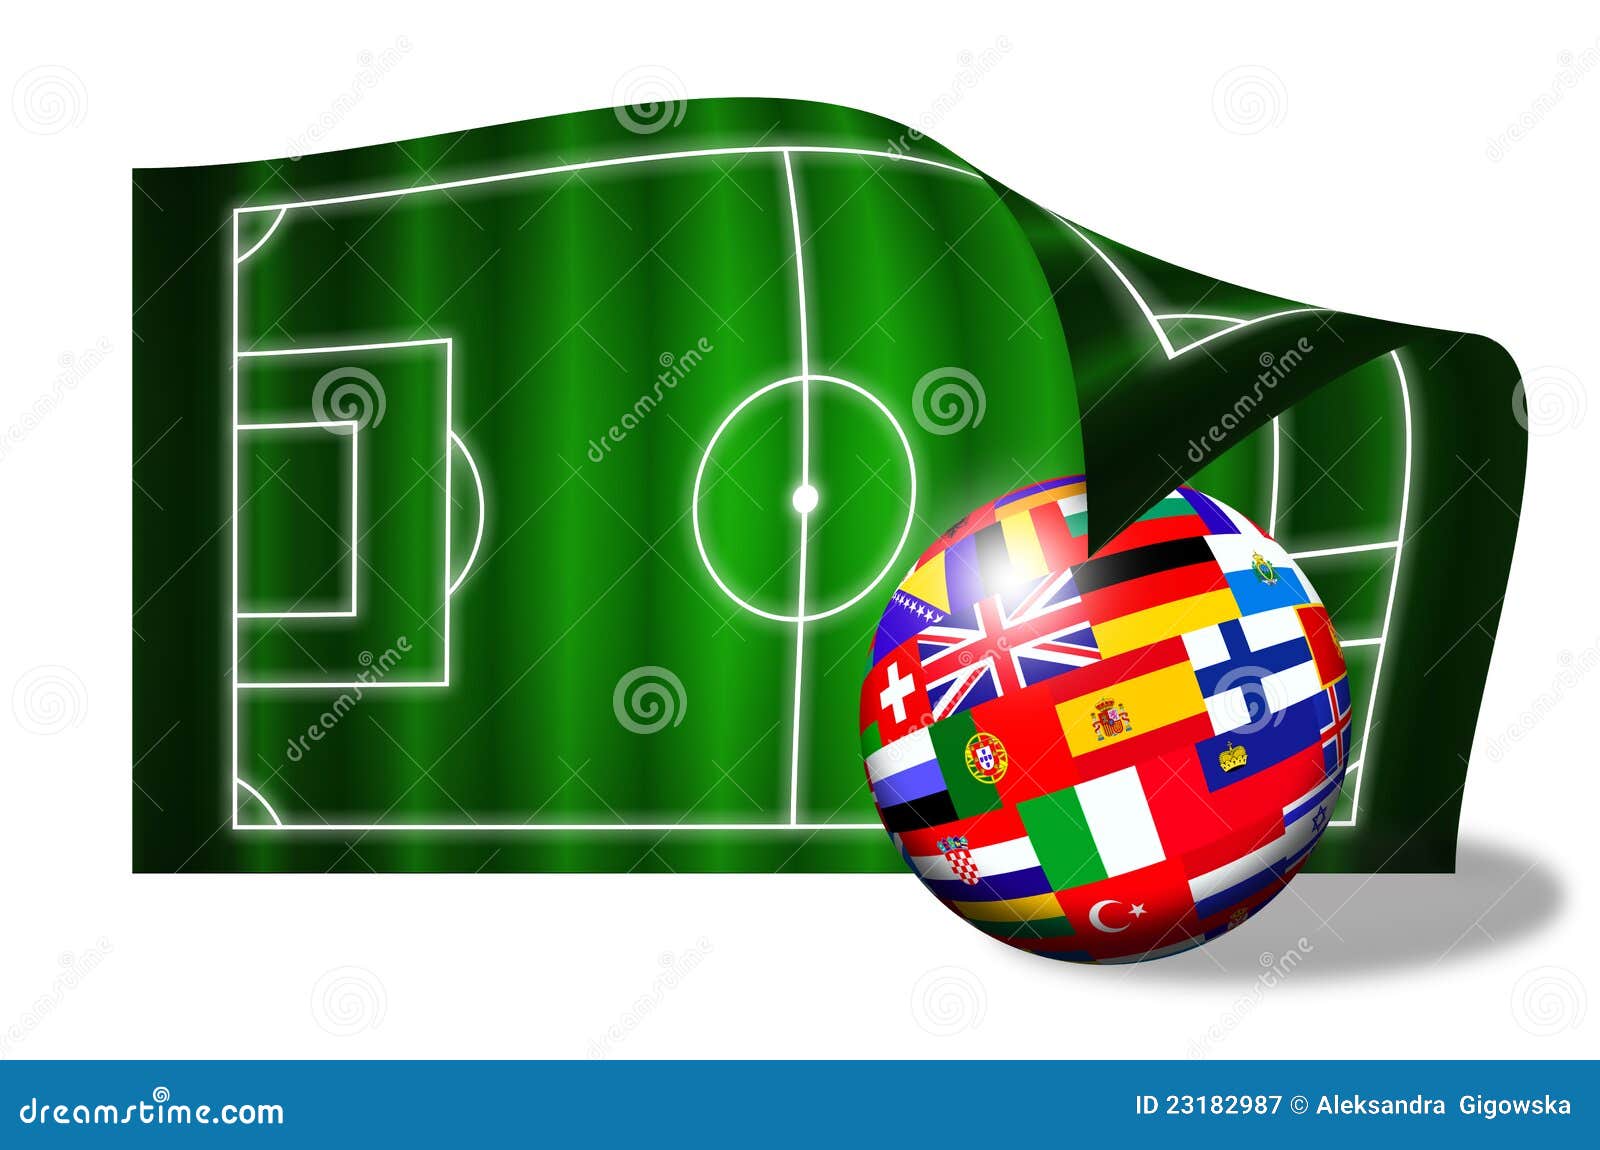 Триколор футбольный. Европейский футбол флаги. Поле для флаг футбола. Футбольные иконки флажок на поле. Флаг мяч.